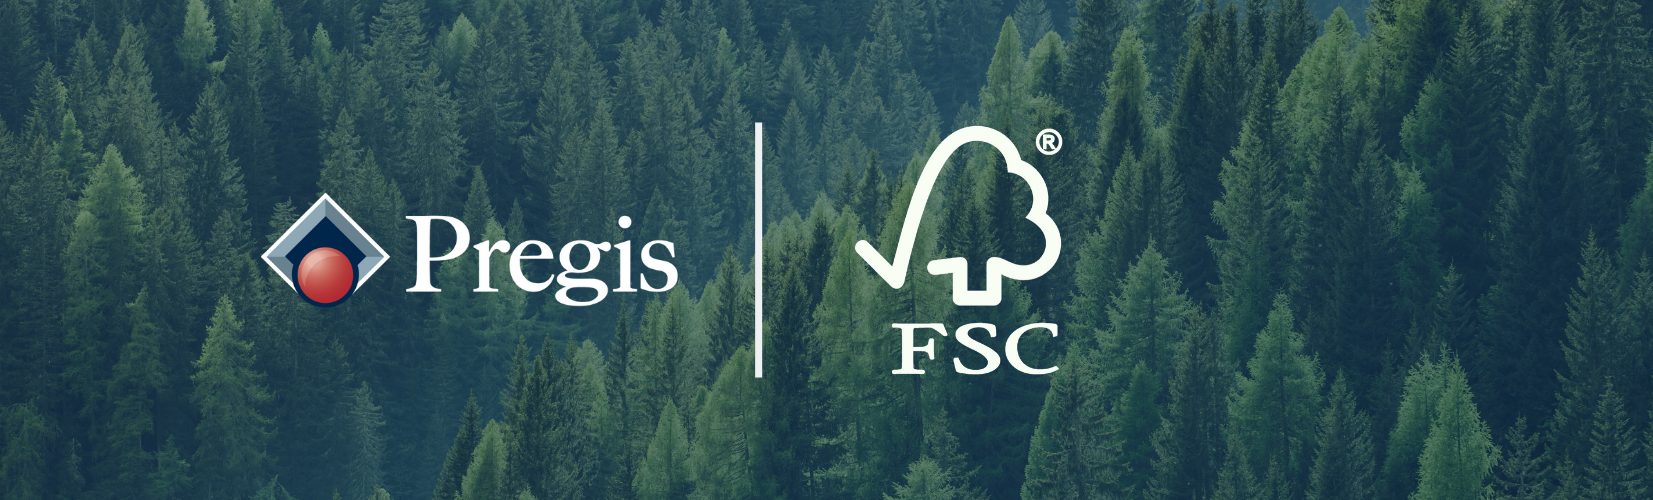 Pregis and FSC logos together